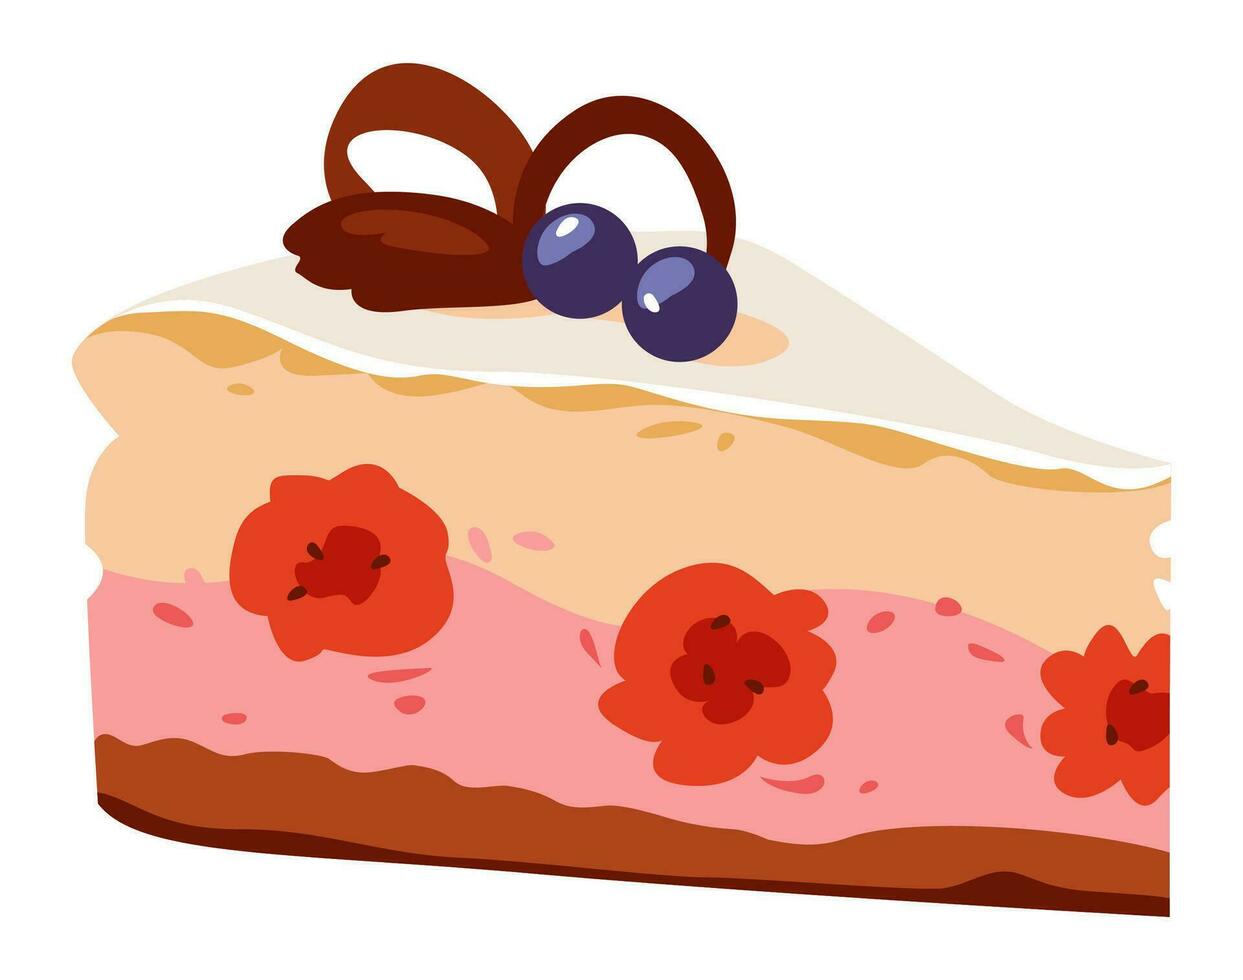 hallon cheesecake. en bit av kaka. vektor illustration av en ljuv efterrätt. hemlagad kakor.